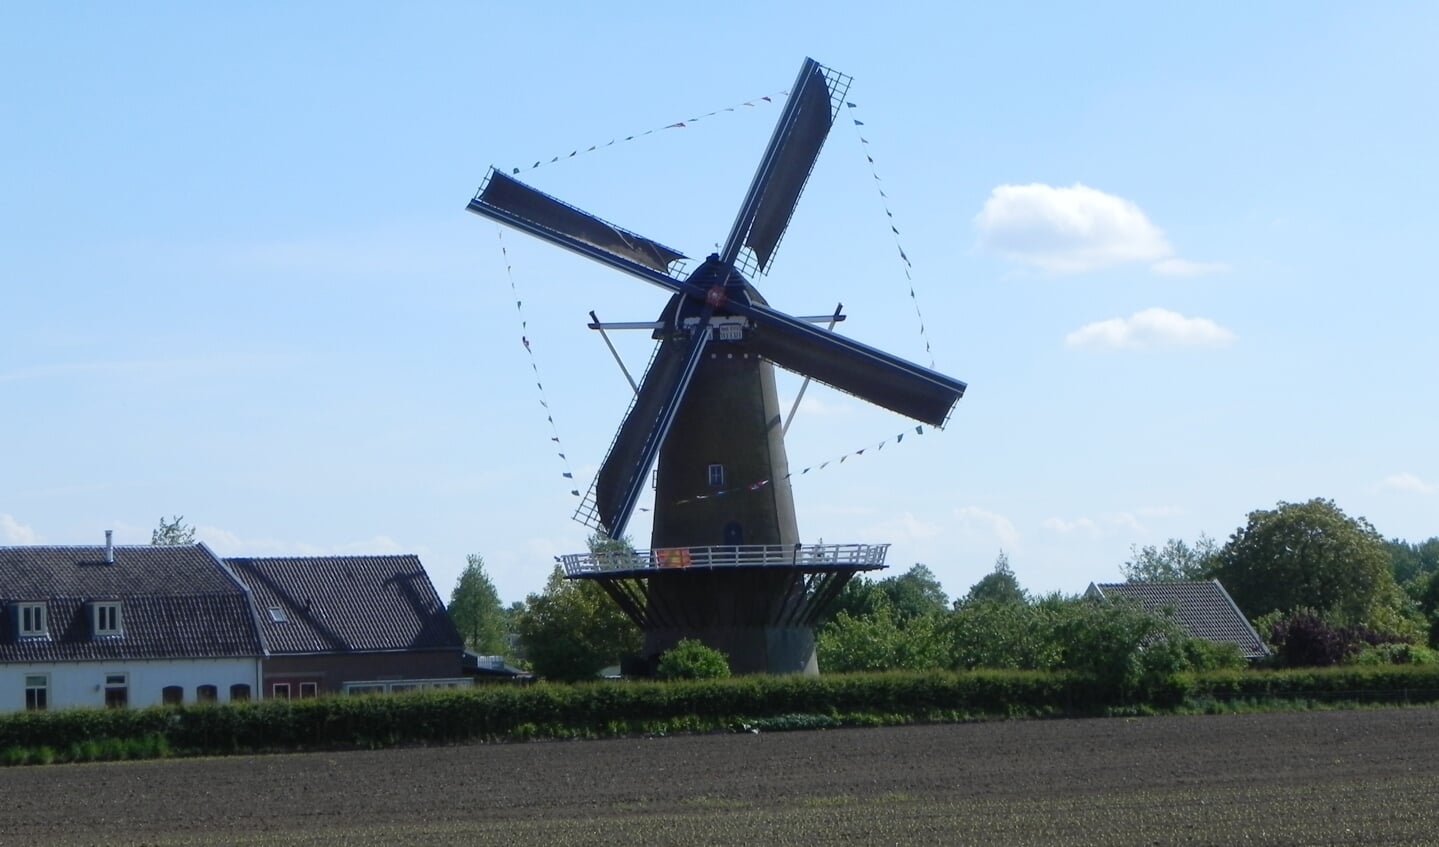 De molen vormt een karakteristiek beeld bij binnenkomst van Werkhoven.